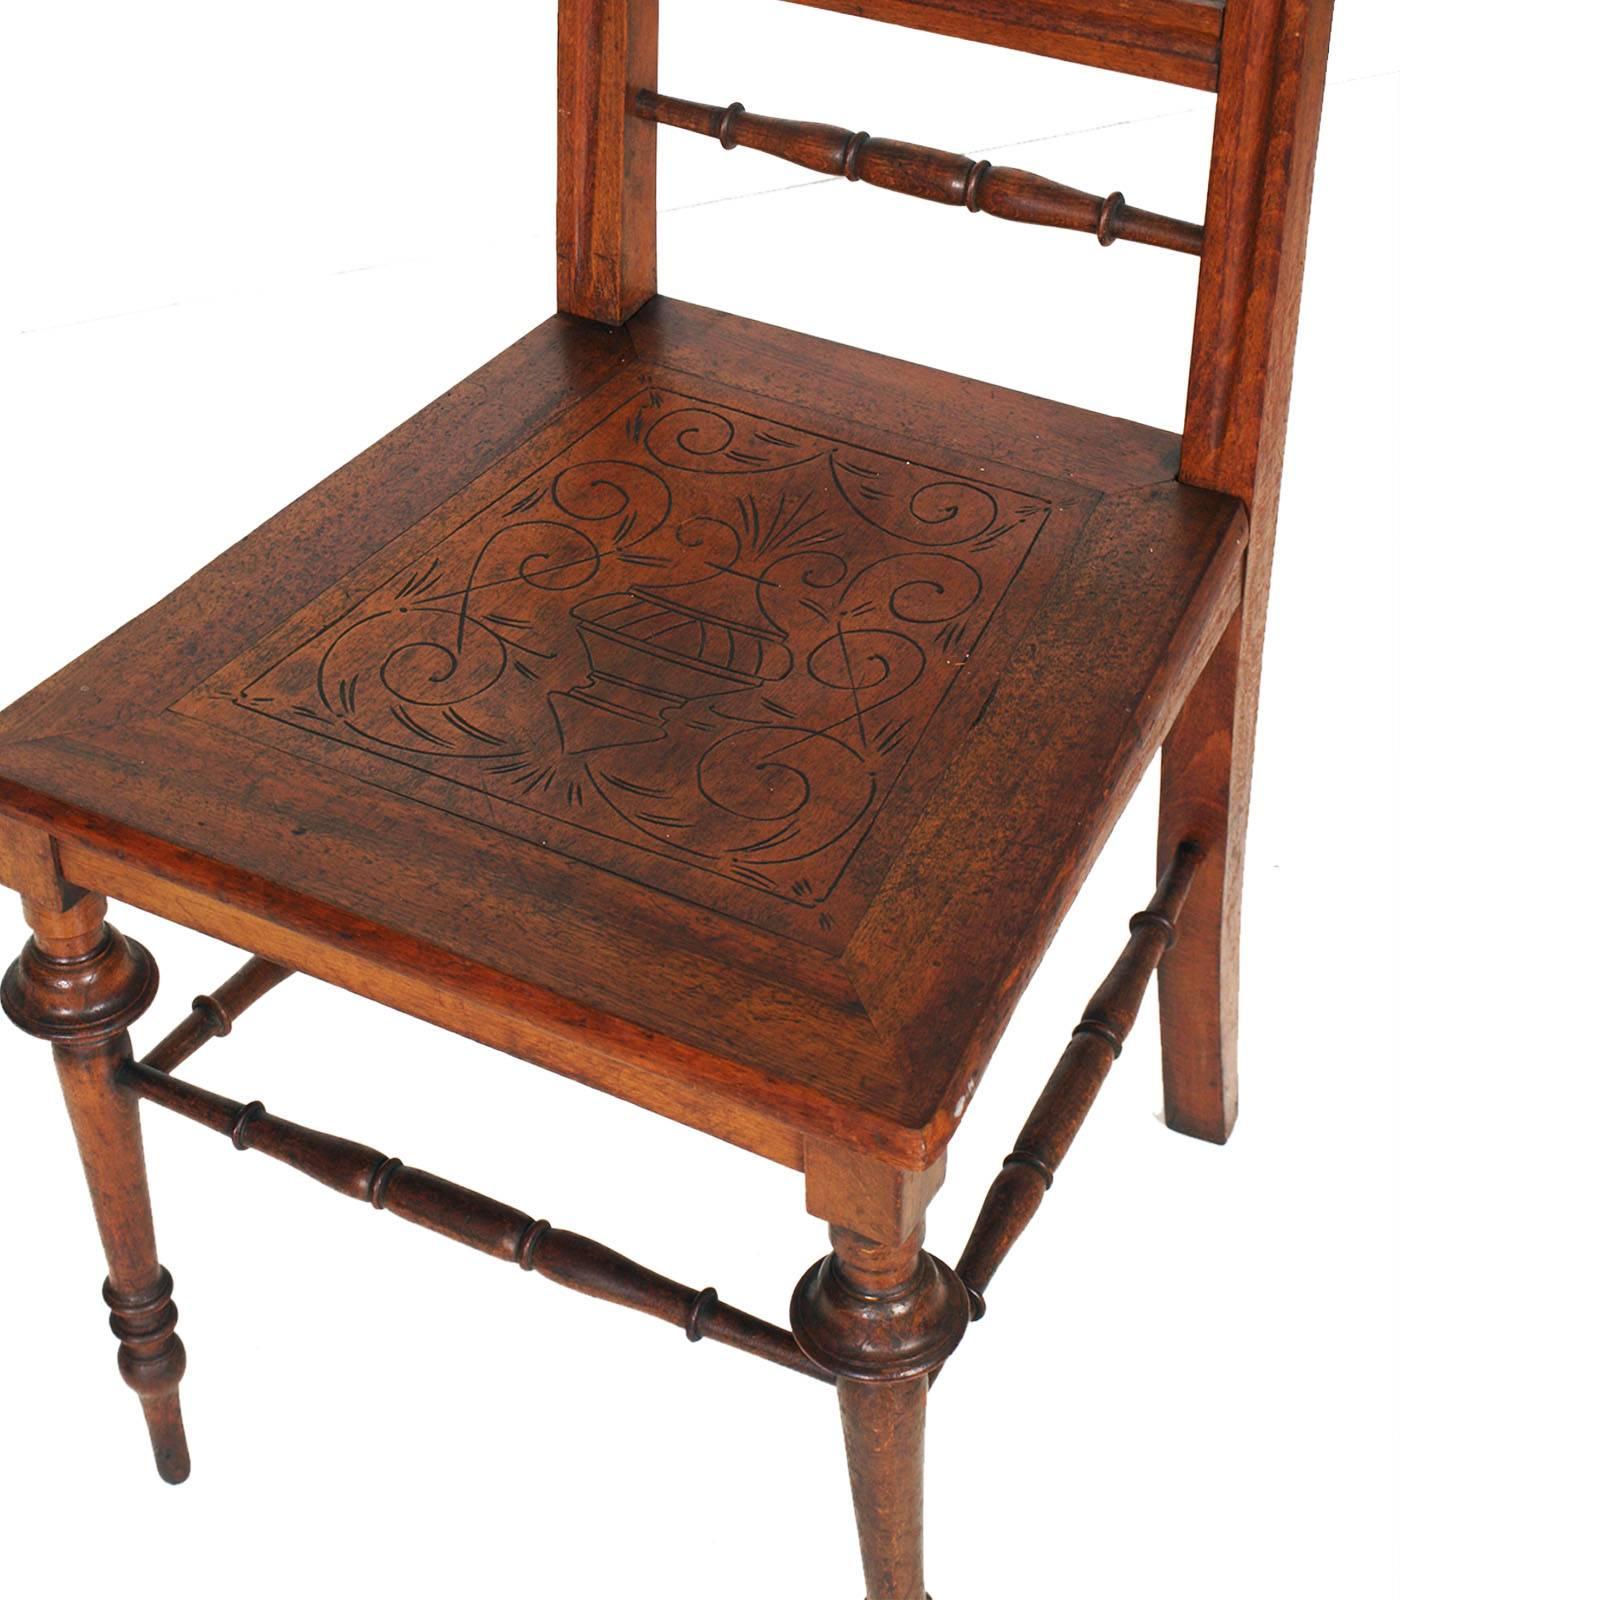 Elegante Chiavarine-Stühle aus der Mitte des 19. Jahrhunderts aus gedrechseltem Nussbaumholz und mit handgeschnitzter Sitzfläche, restauriert und gewachst

Messen Sie cm: H 101\47 x B 45 x T 45.